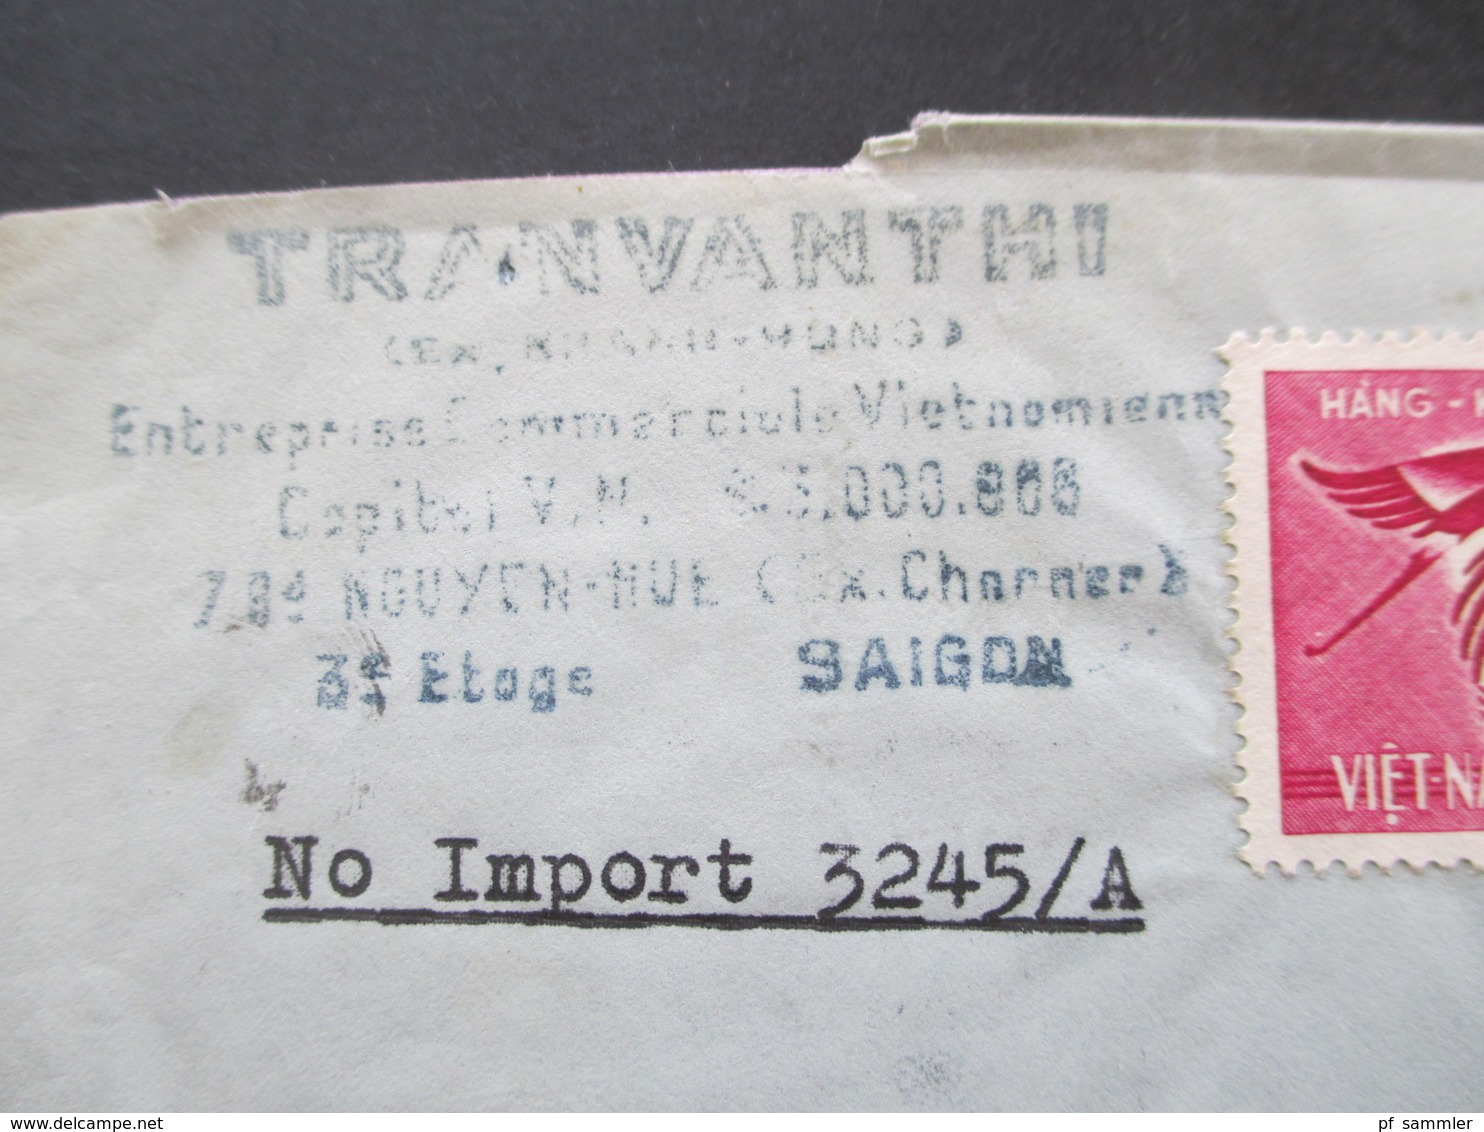 Vietnam / Süd Vietnam 1965 Auslandsbrief Firmenbrief Nach Schweden Air Mail / Luftpost Gommage Tropical - Vietnam